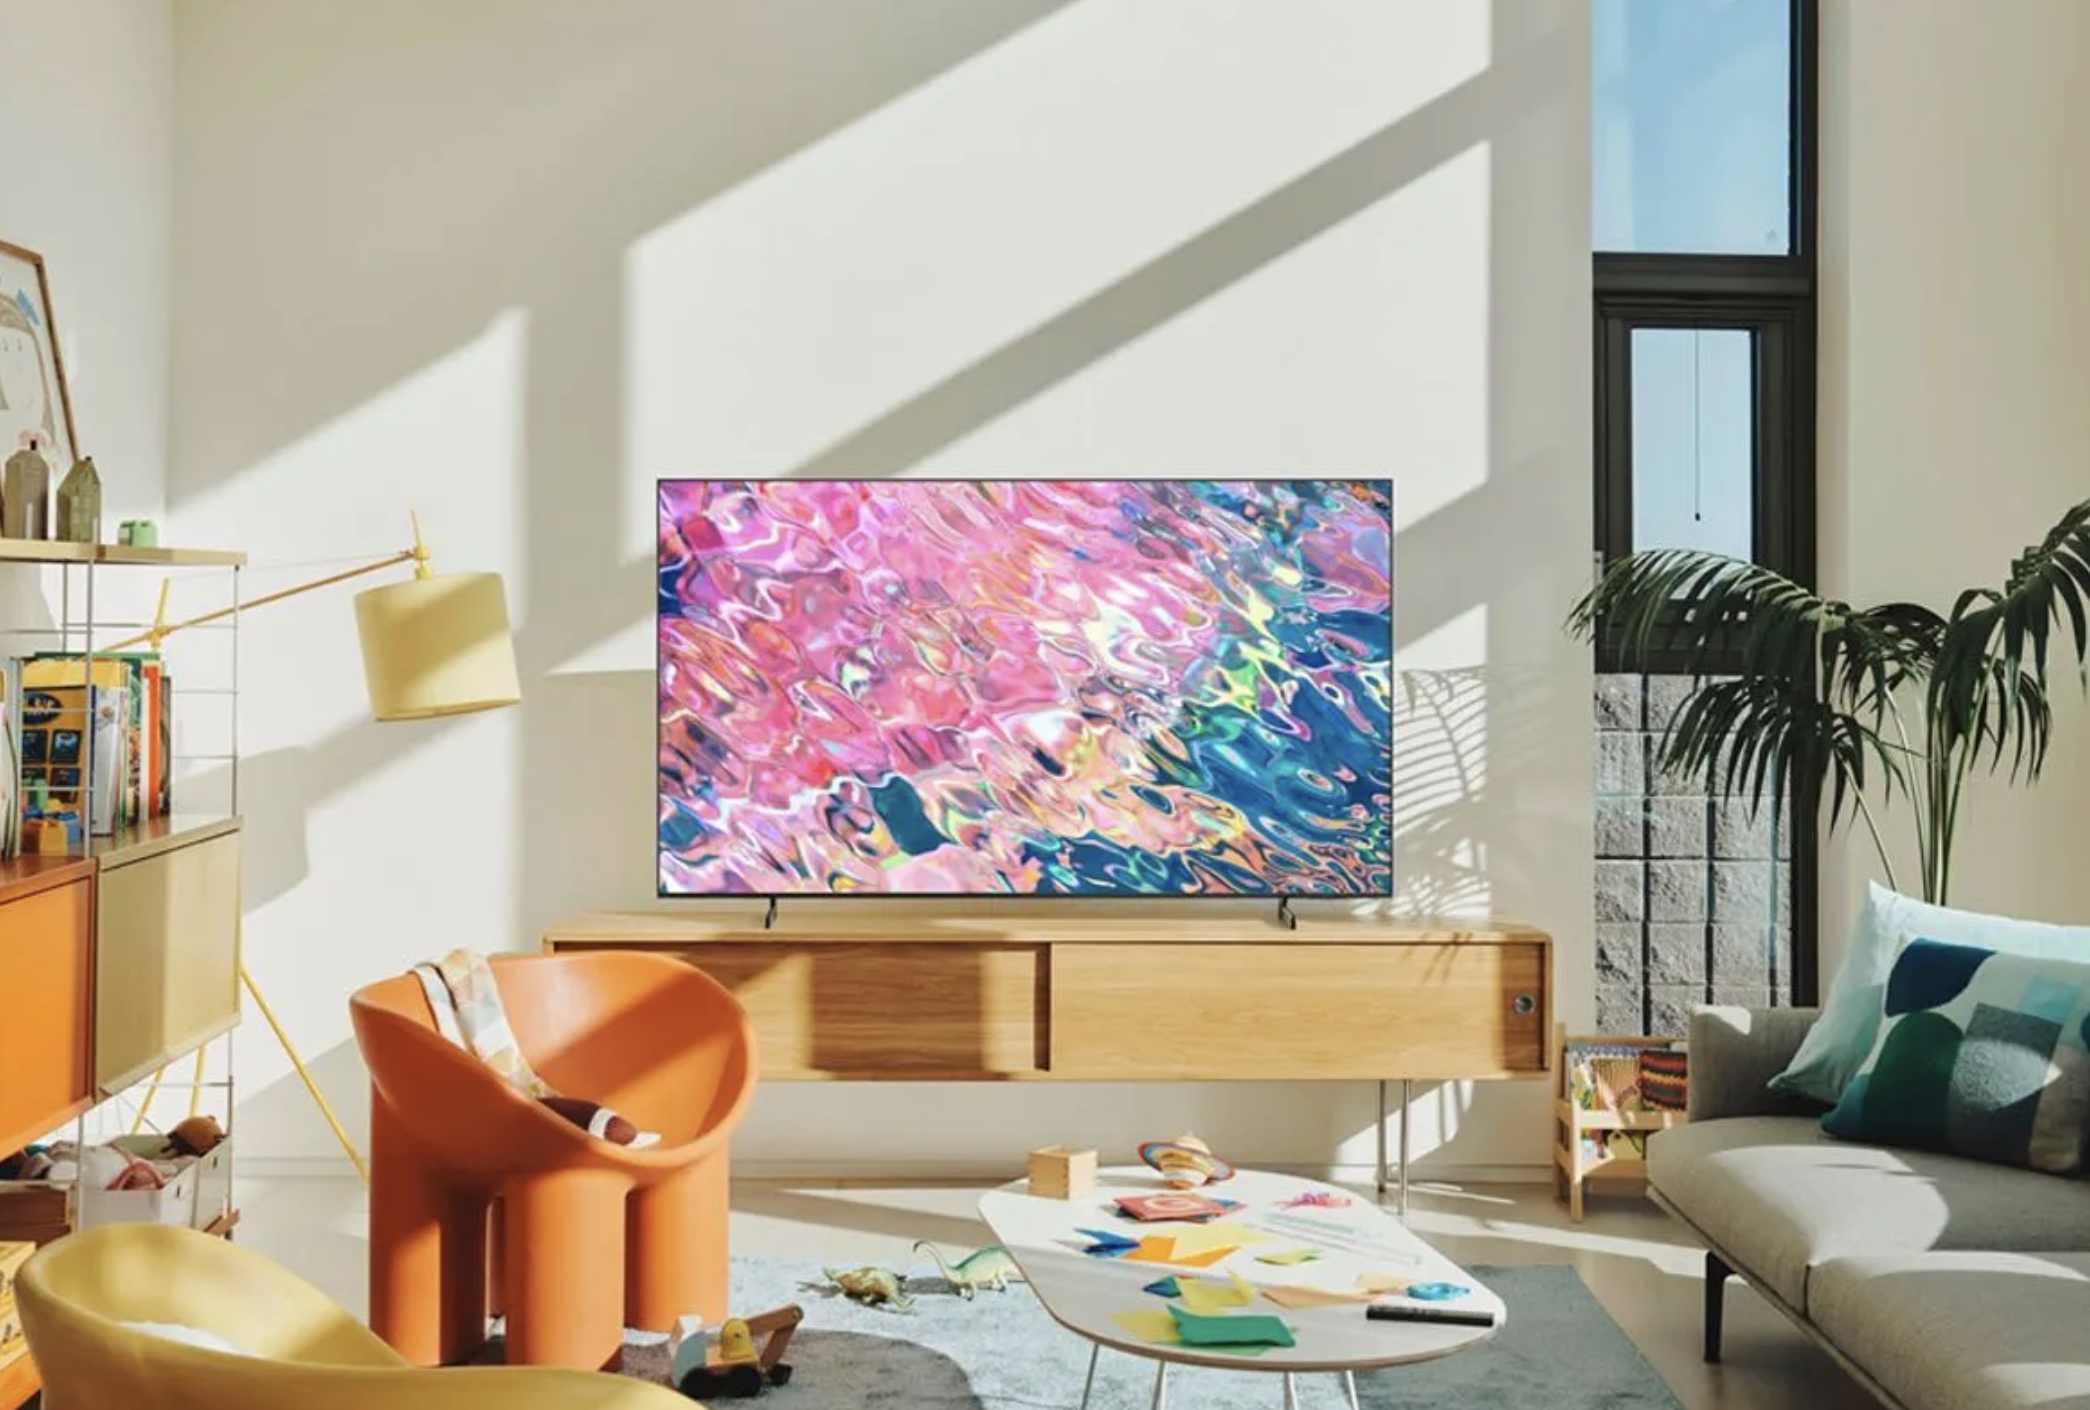 معمولاً ۱۸۰۰ دلار، این تلویزیون ۷۰ اینچی QLED سامسونگ به ۸۸۰ دلار تخفیف داده می شود.